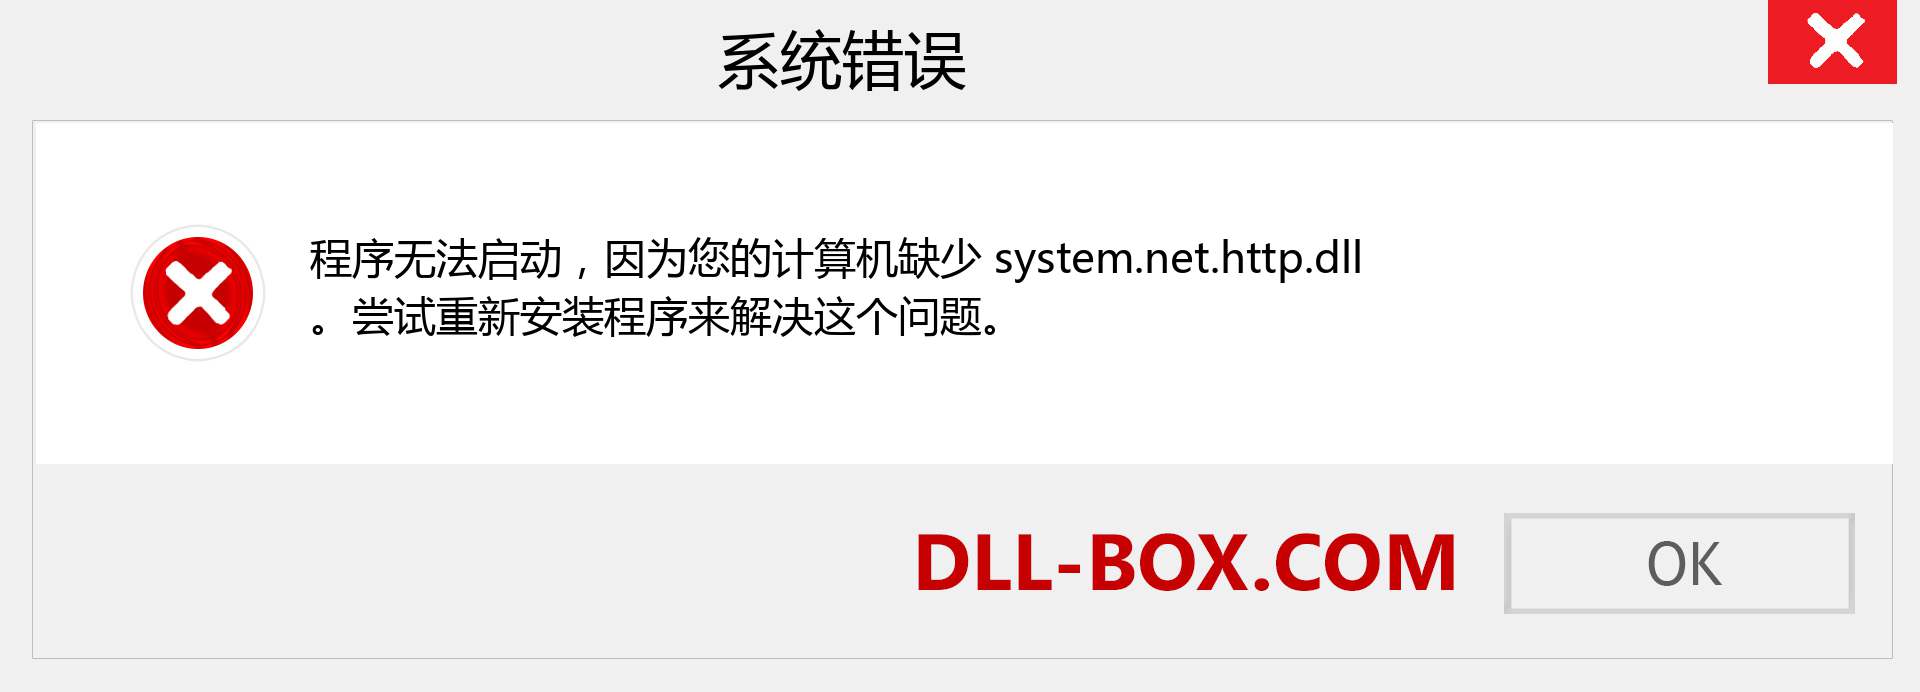 system.net.http.dll 文件丢失？。 适用于 Windows 7、8、10 的下载 - 修复 Windows、照片、图像上的 system.net.http dll 丢失错误